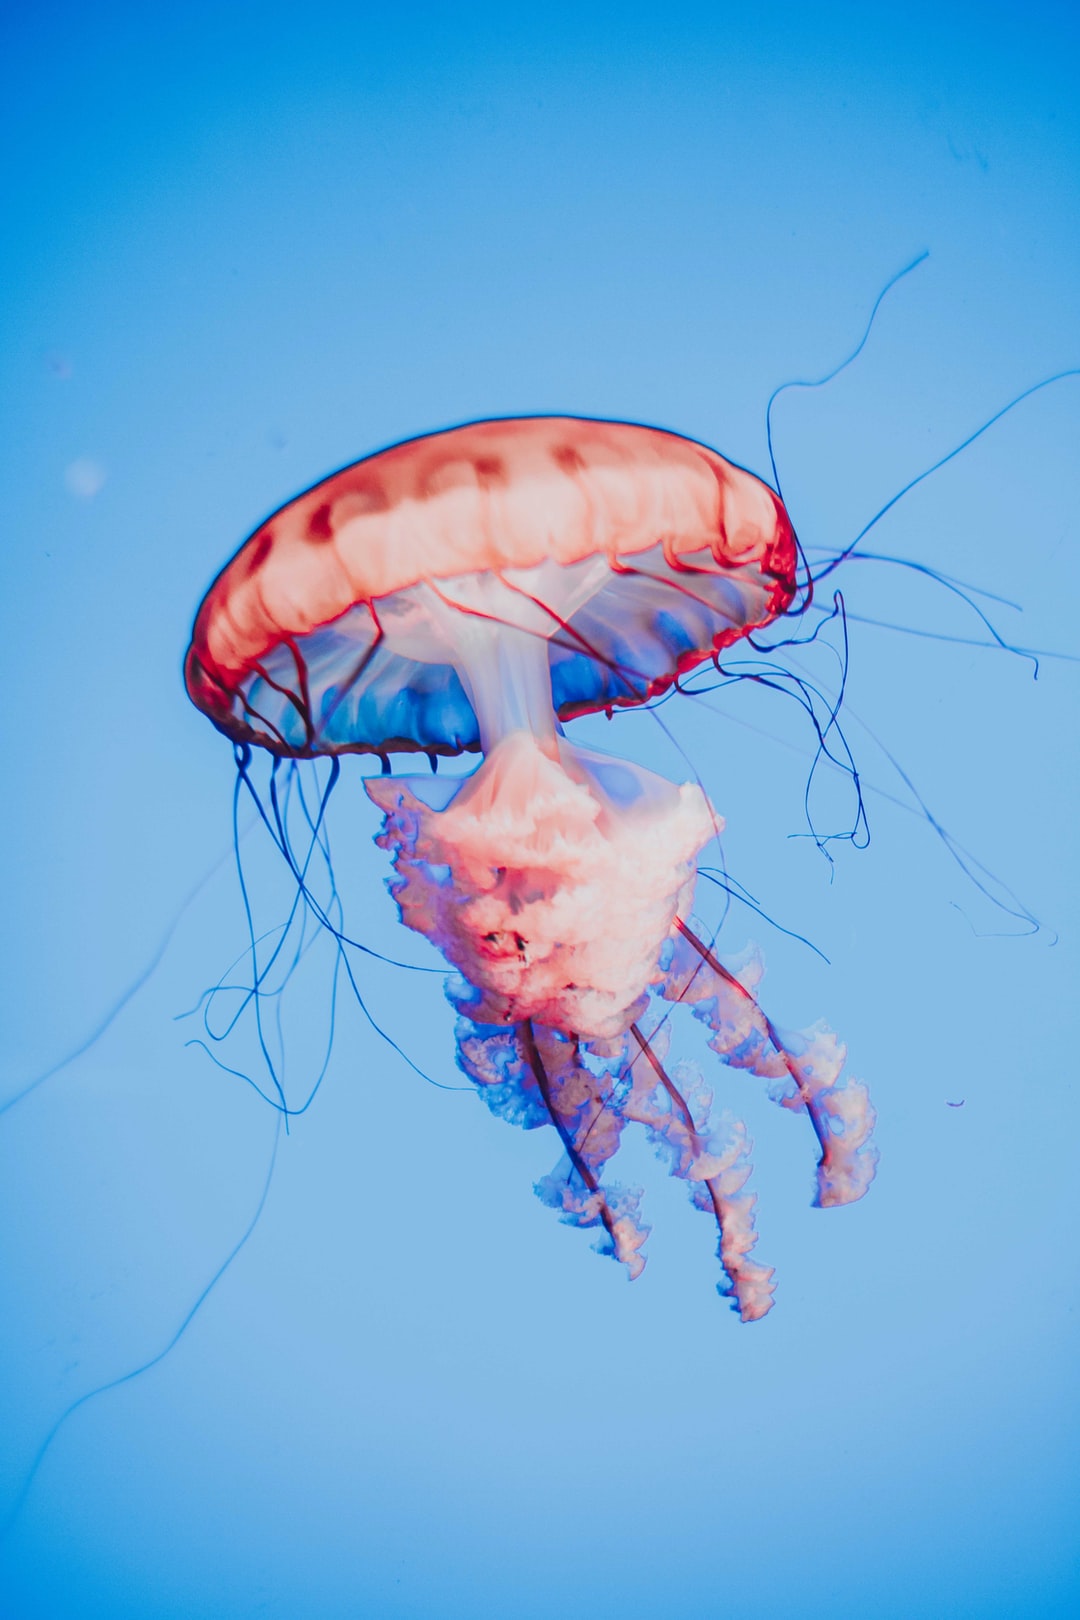 23 wichtige Fragen zu Wie Aquarium Schnecken Töten?